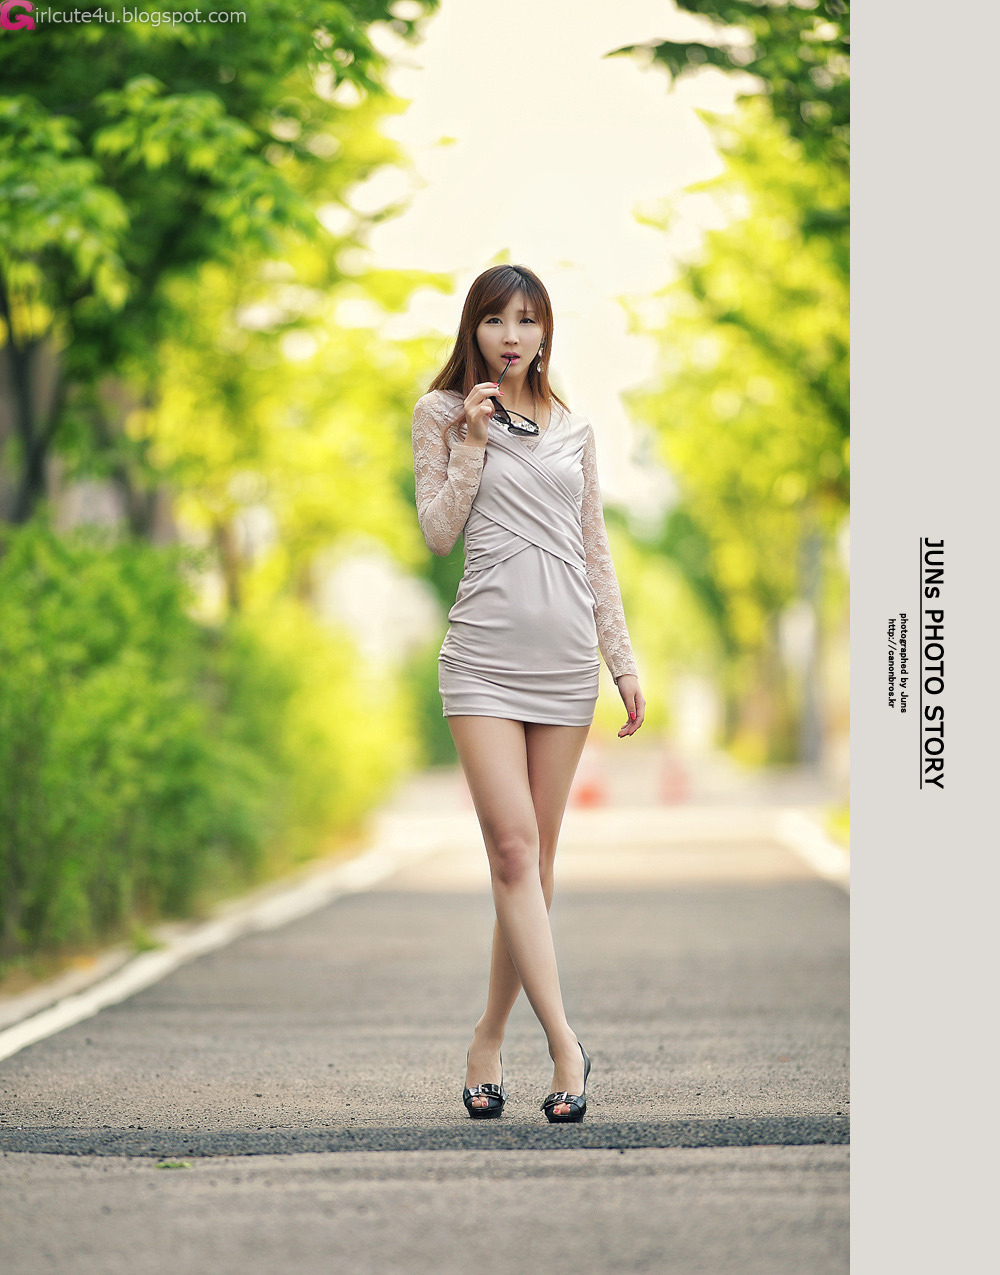 ha yeon soo nude - Image 4 FAP